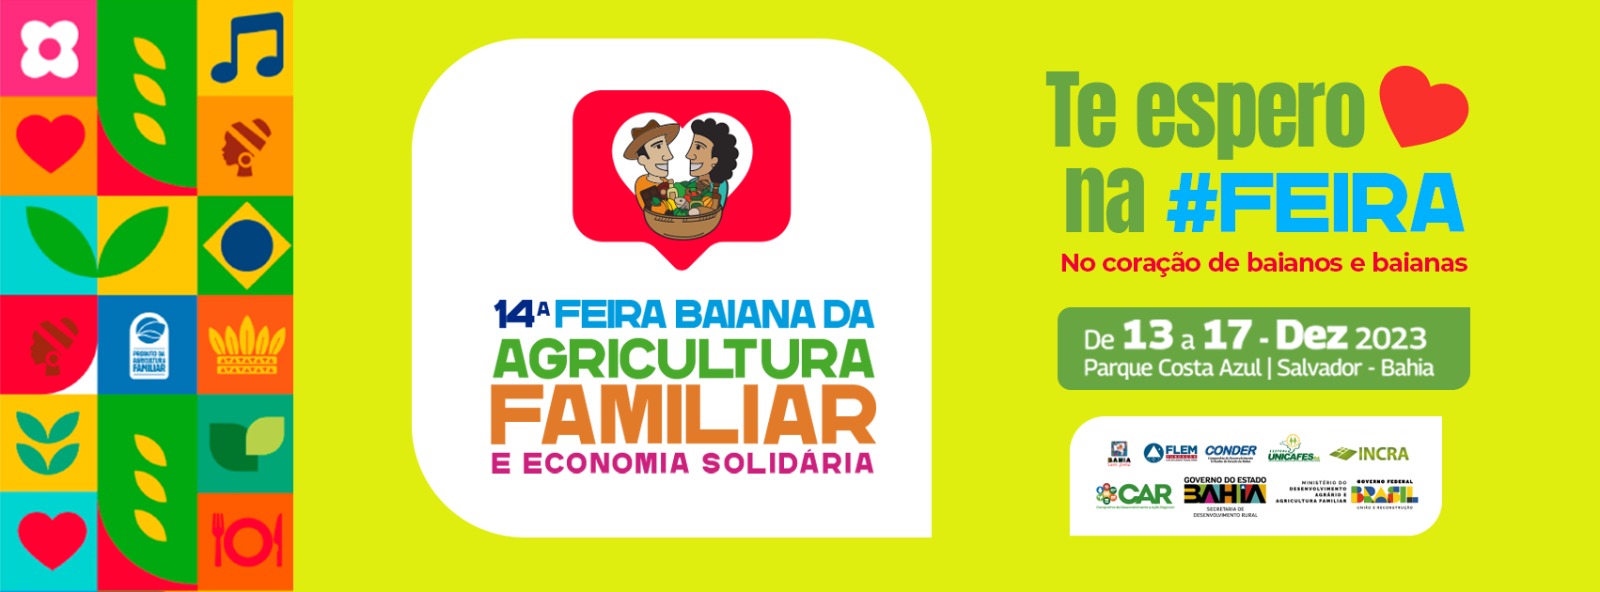 Visite A 14ª Feira Da Agricultura Familiar, Você Vai Amar!